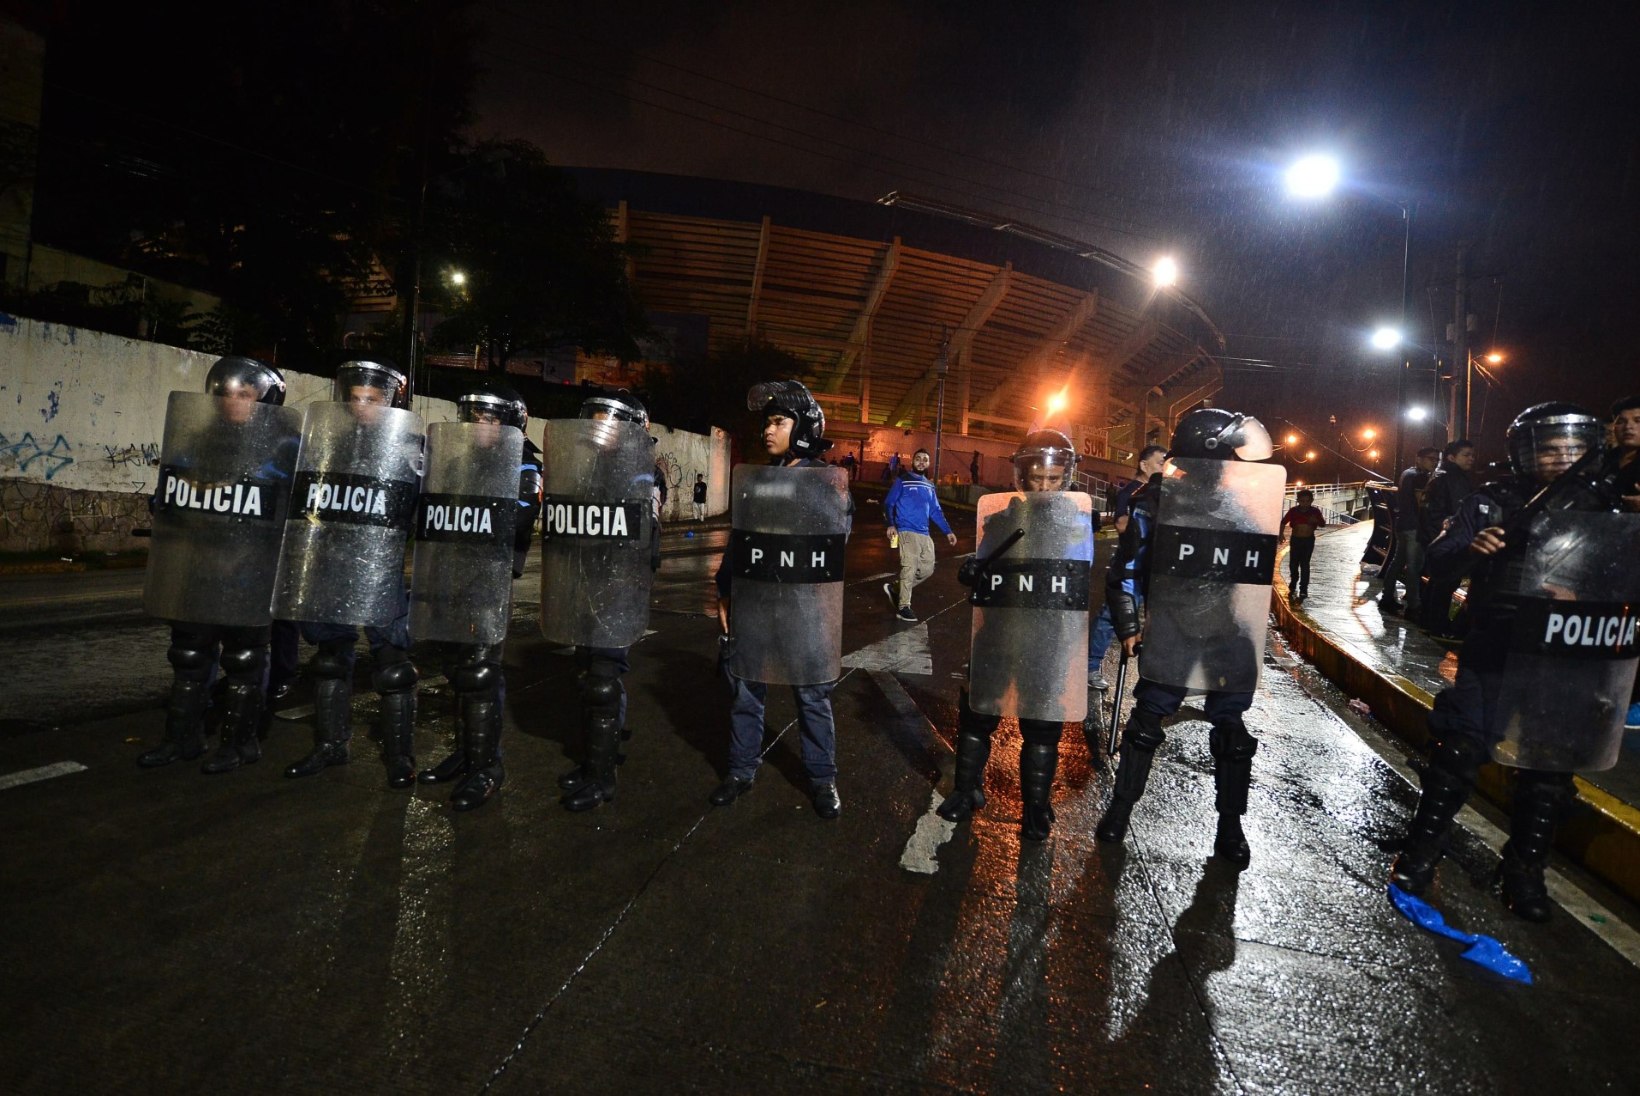 FOTOD | Hondurase jalgpallifännid tekitasid kaose, mistõttu suri kolm inimest